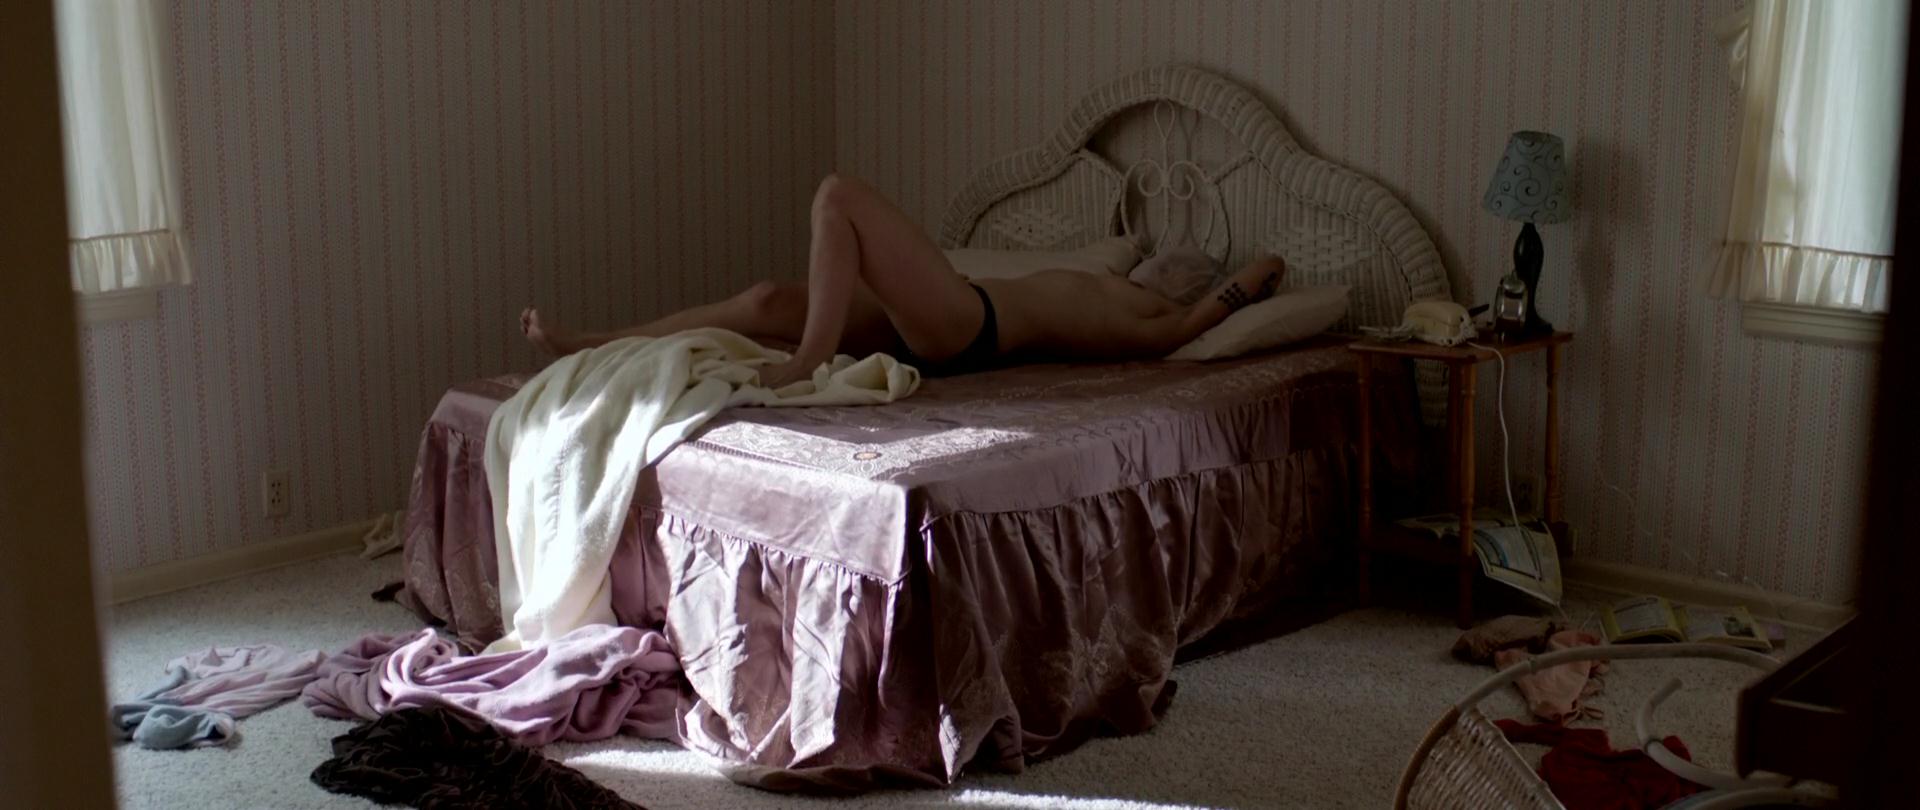 Кристина Клебе nude pics.